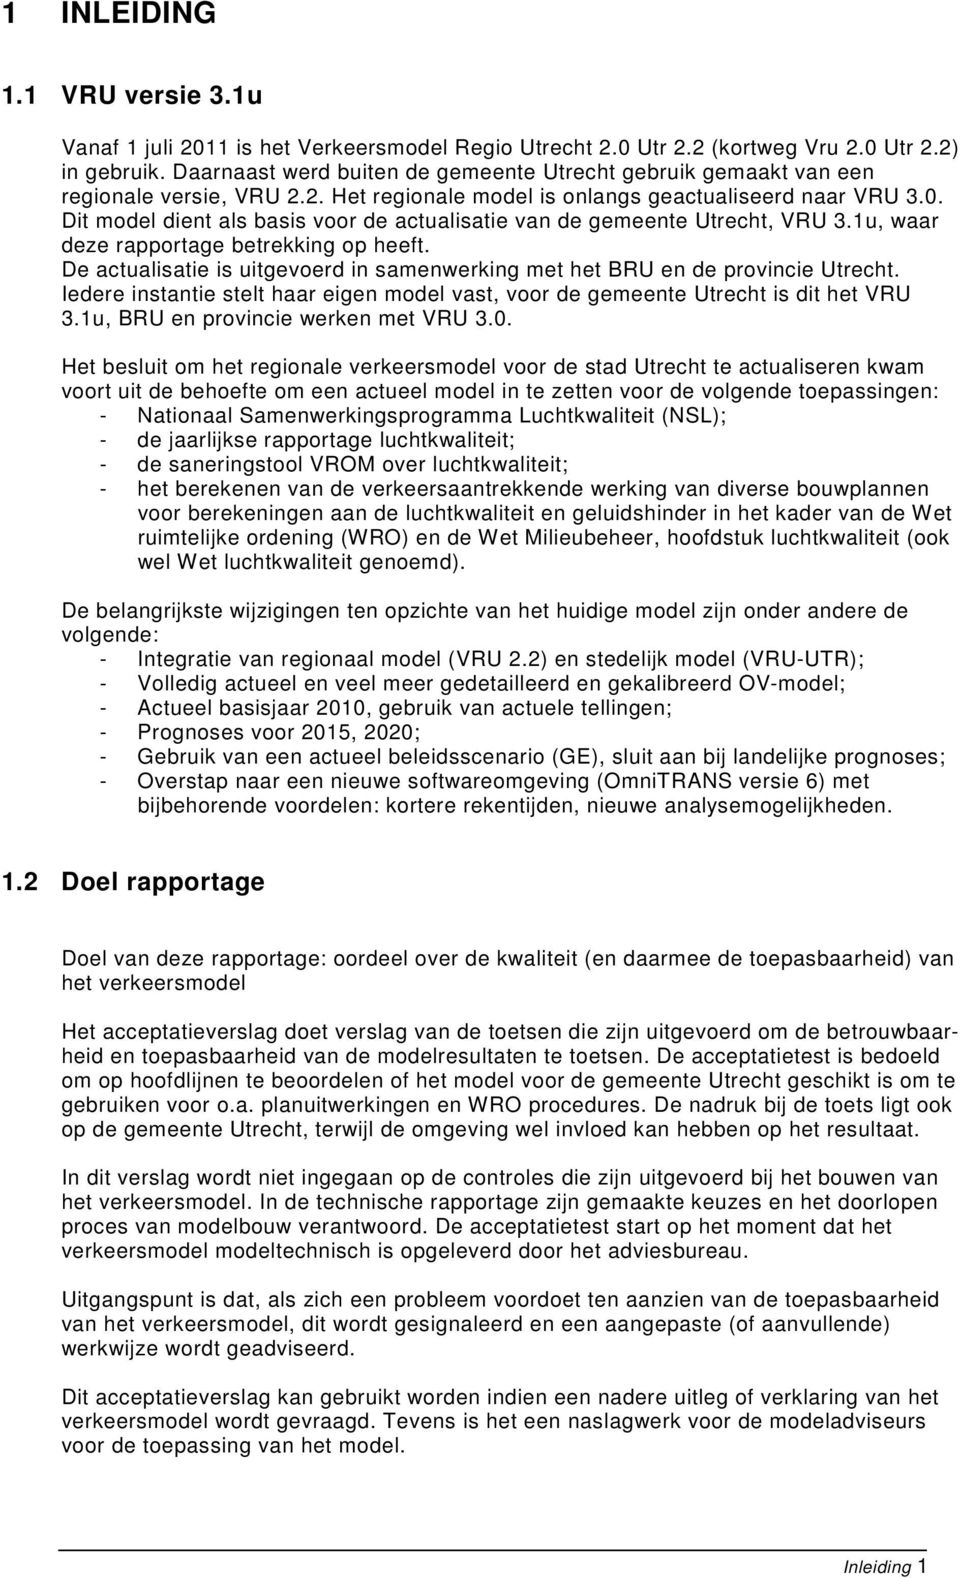 Dit model dient als basis voor de actualisatie van de gemeente Utrecht, VRU 3.1u, waar deze rapportage betrekking op heeft.